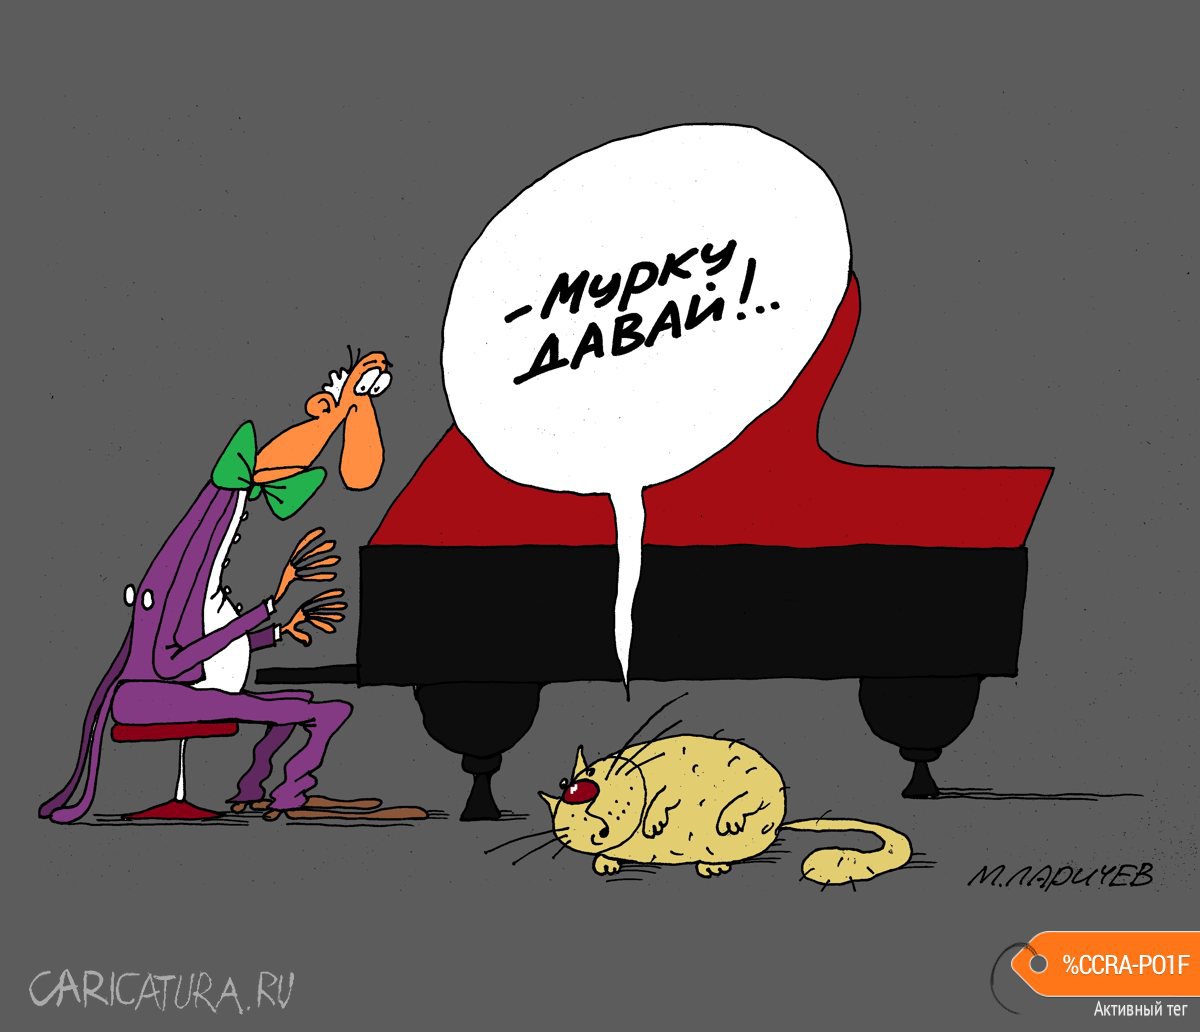 Карикатура "Давай...", Михаил Ларичев